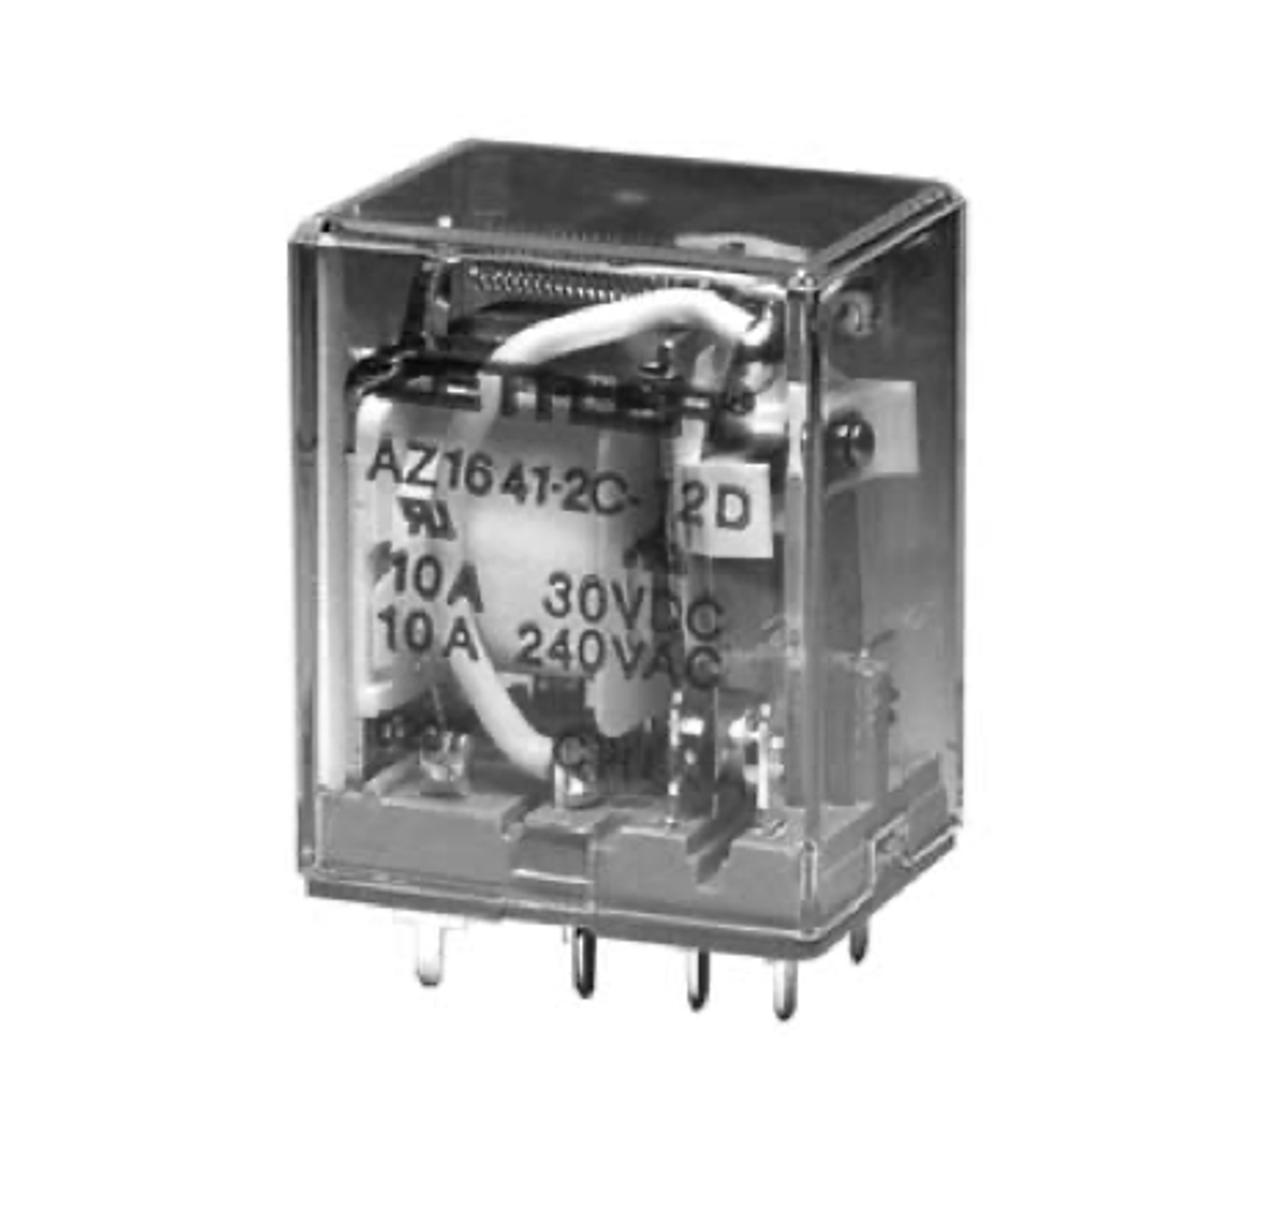 American Zettler AZ1641-4C-6D Power Relay